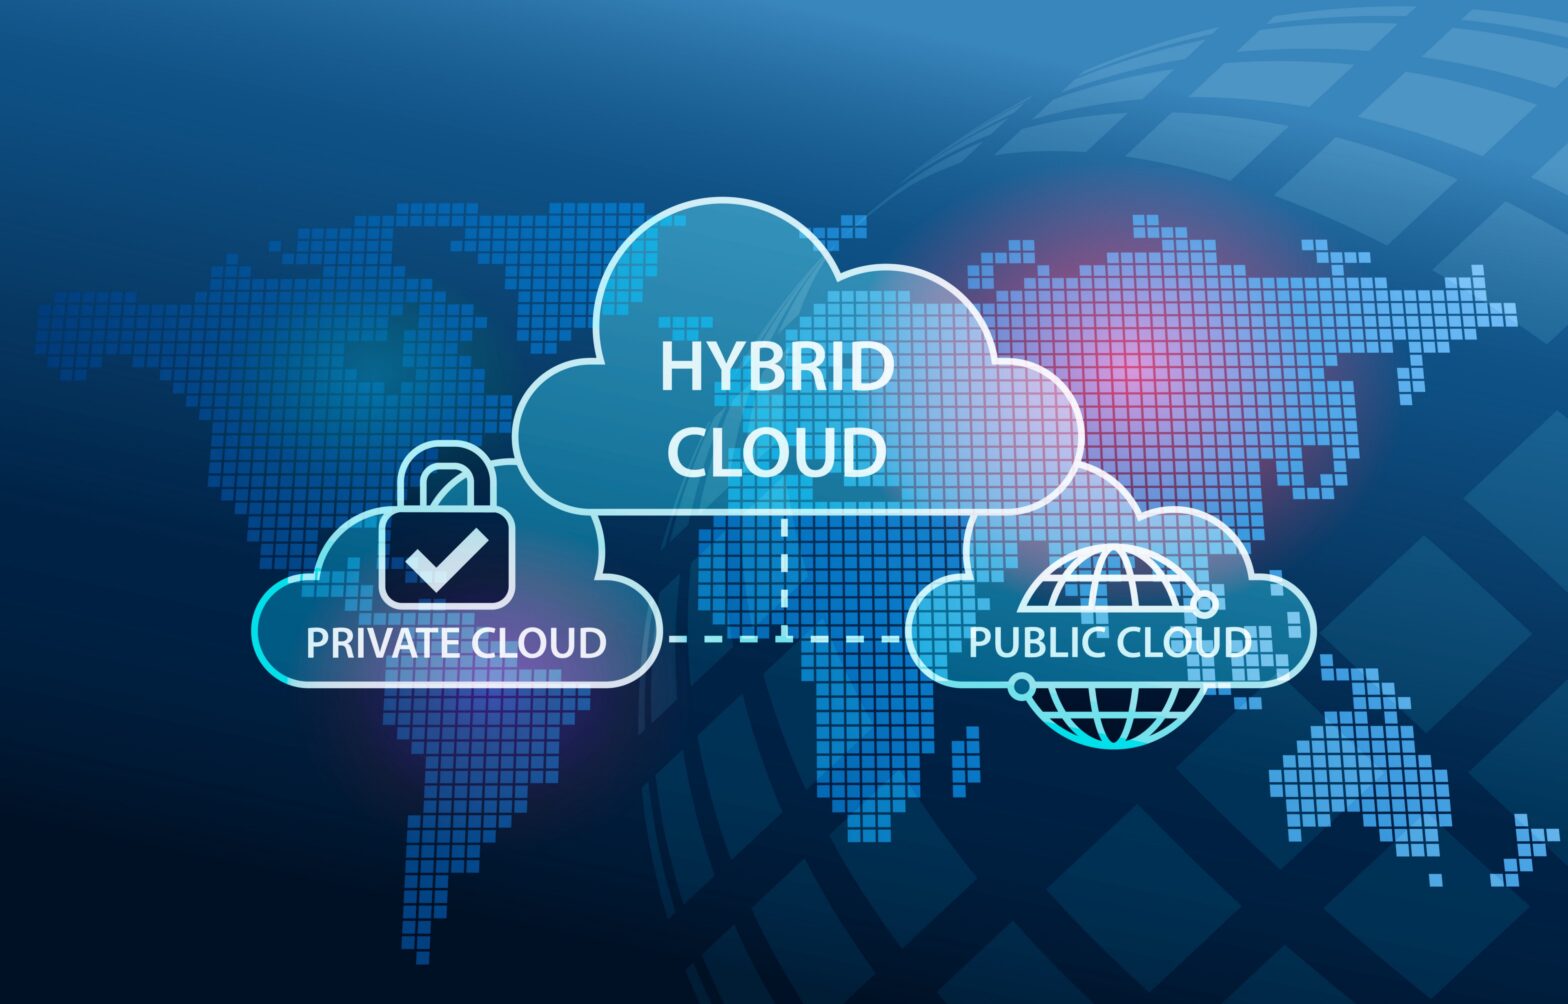 Hybrid Cloud Storage Market